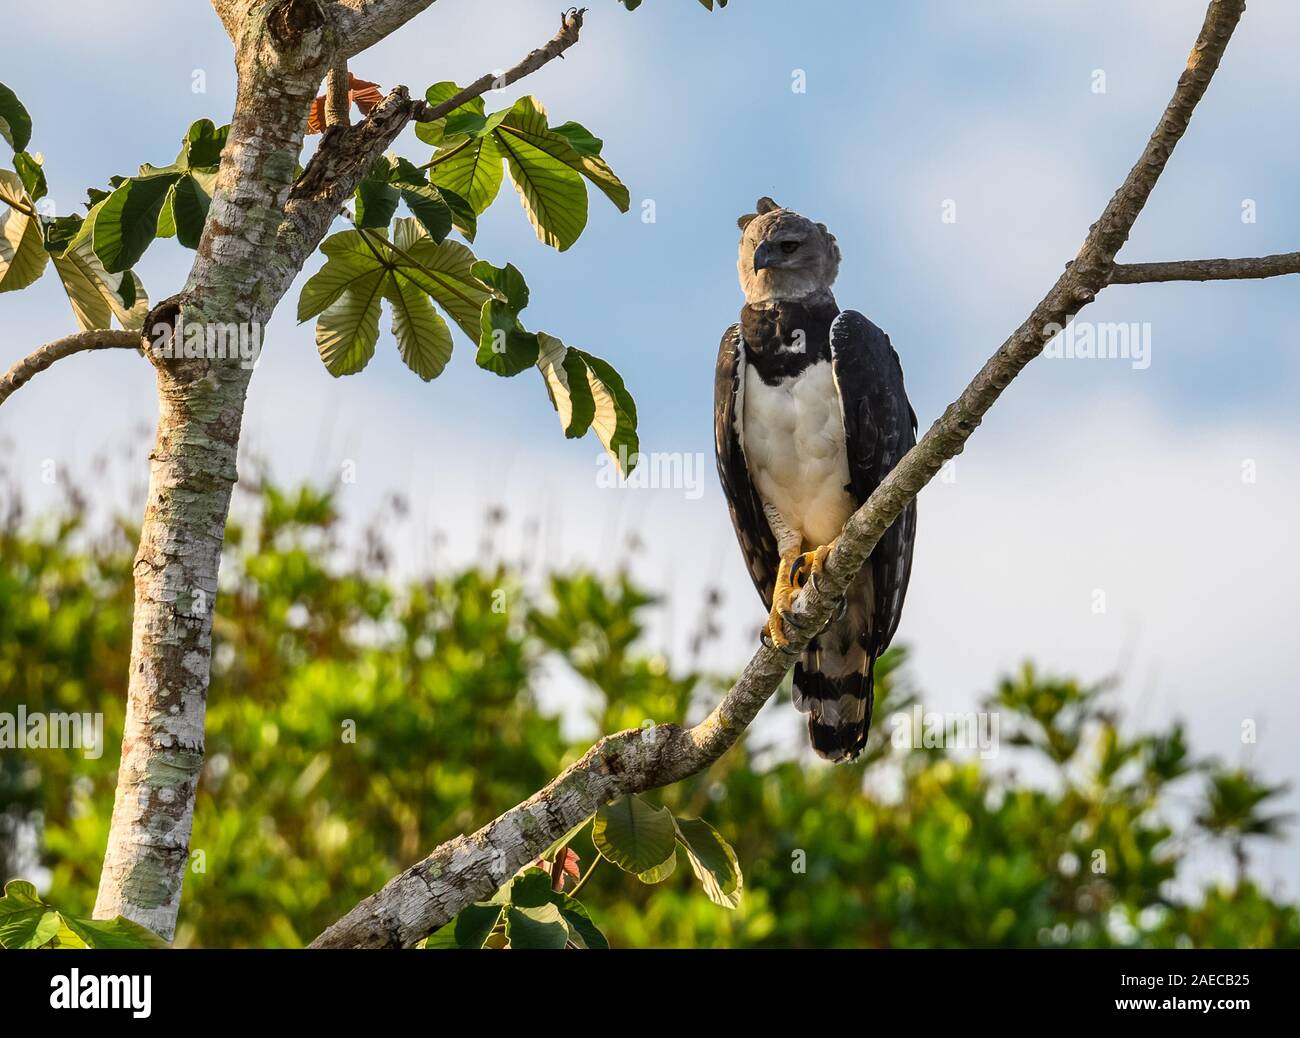 Une Harpie sauvage (Harpia harpyja) perché sur un arbre Cecropia dans la forêt amazonienne. Cangucu, de l'État de Tocantins, au Brésil. Banque D'Images